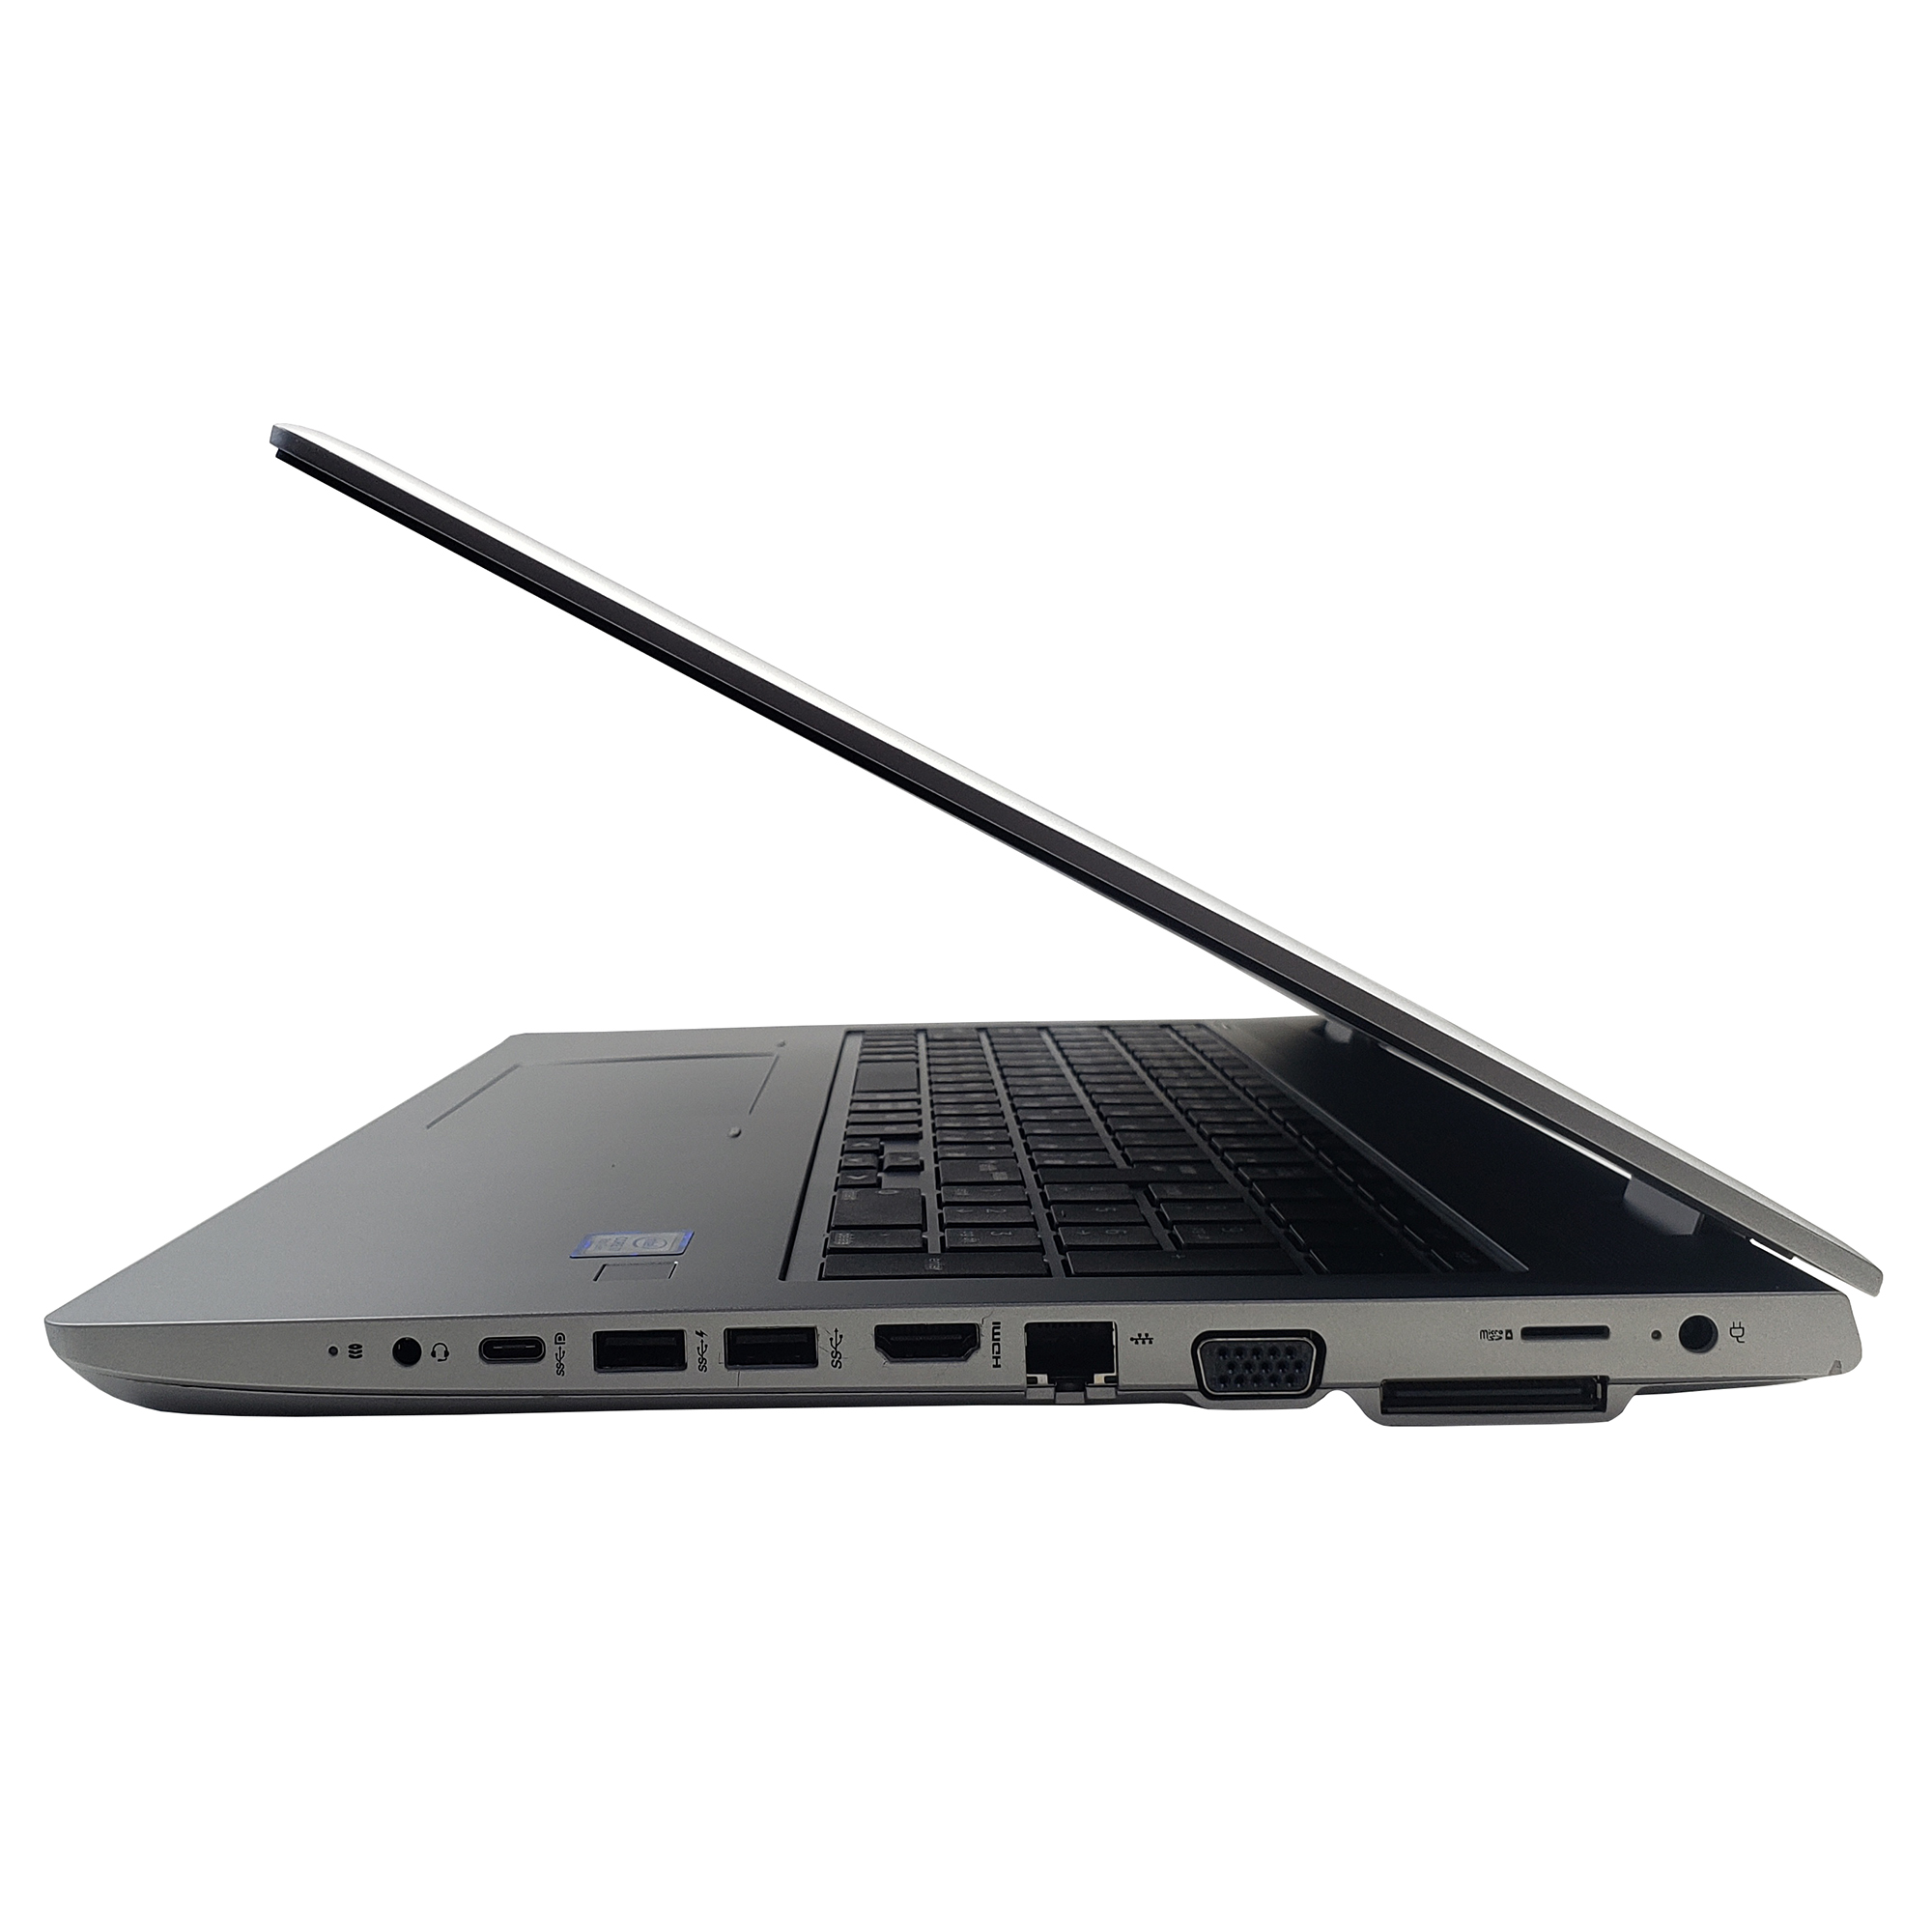 Hp ProBook 650 G5, i7-8565U, 1.8GHZ, 8GB Ram, 256GB SSD, Intel (R) UHD  Graphics 620, 15.6, Eng/Jap Kb, Silver Black (Refurbished) – ‎7KW37UT